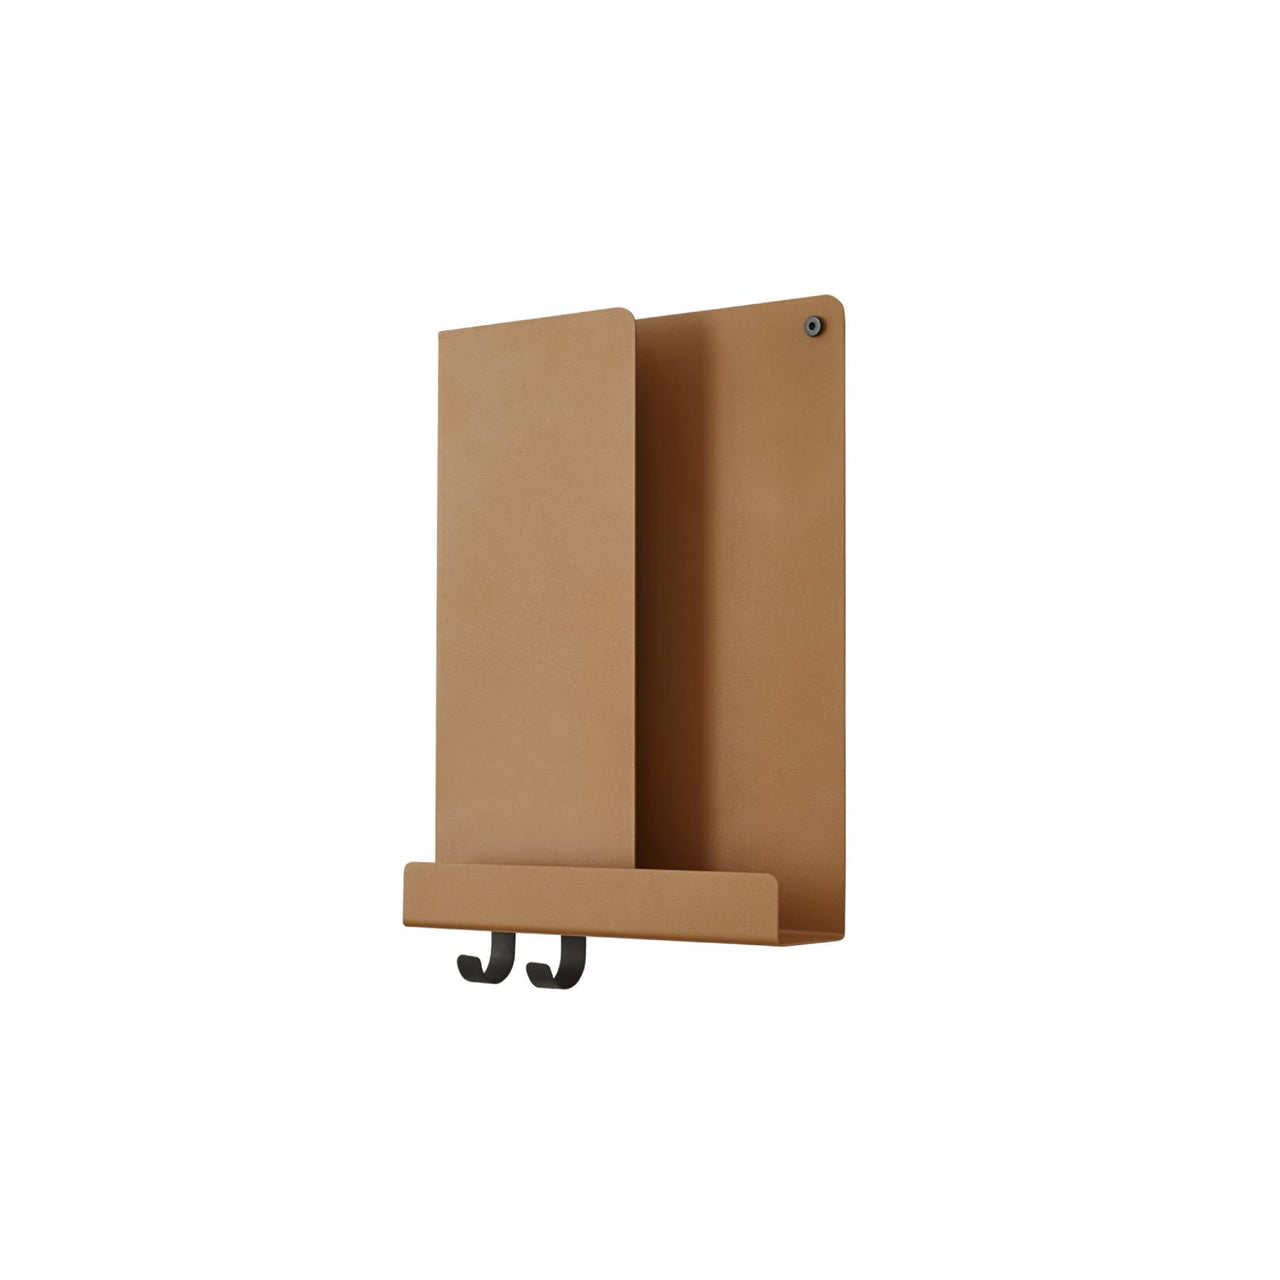 Folded Shelves: Extra Small - 11.6